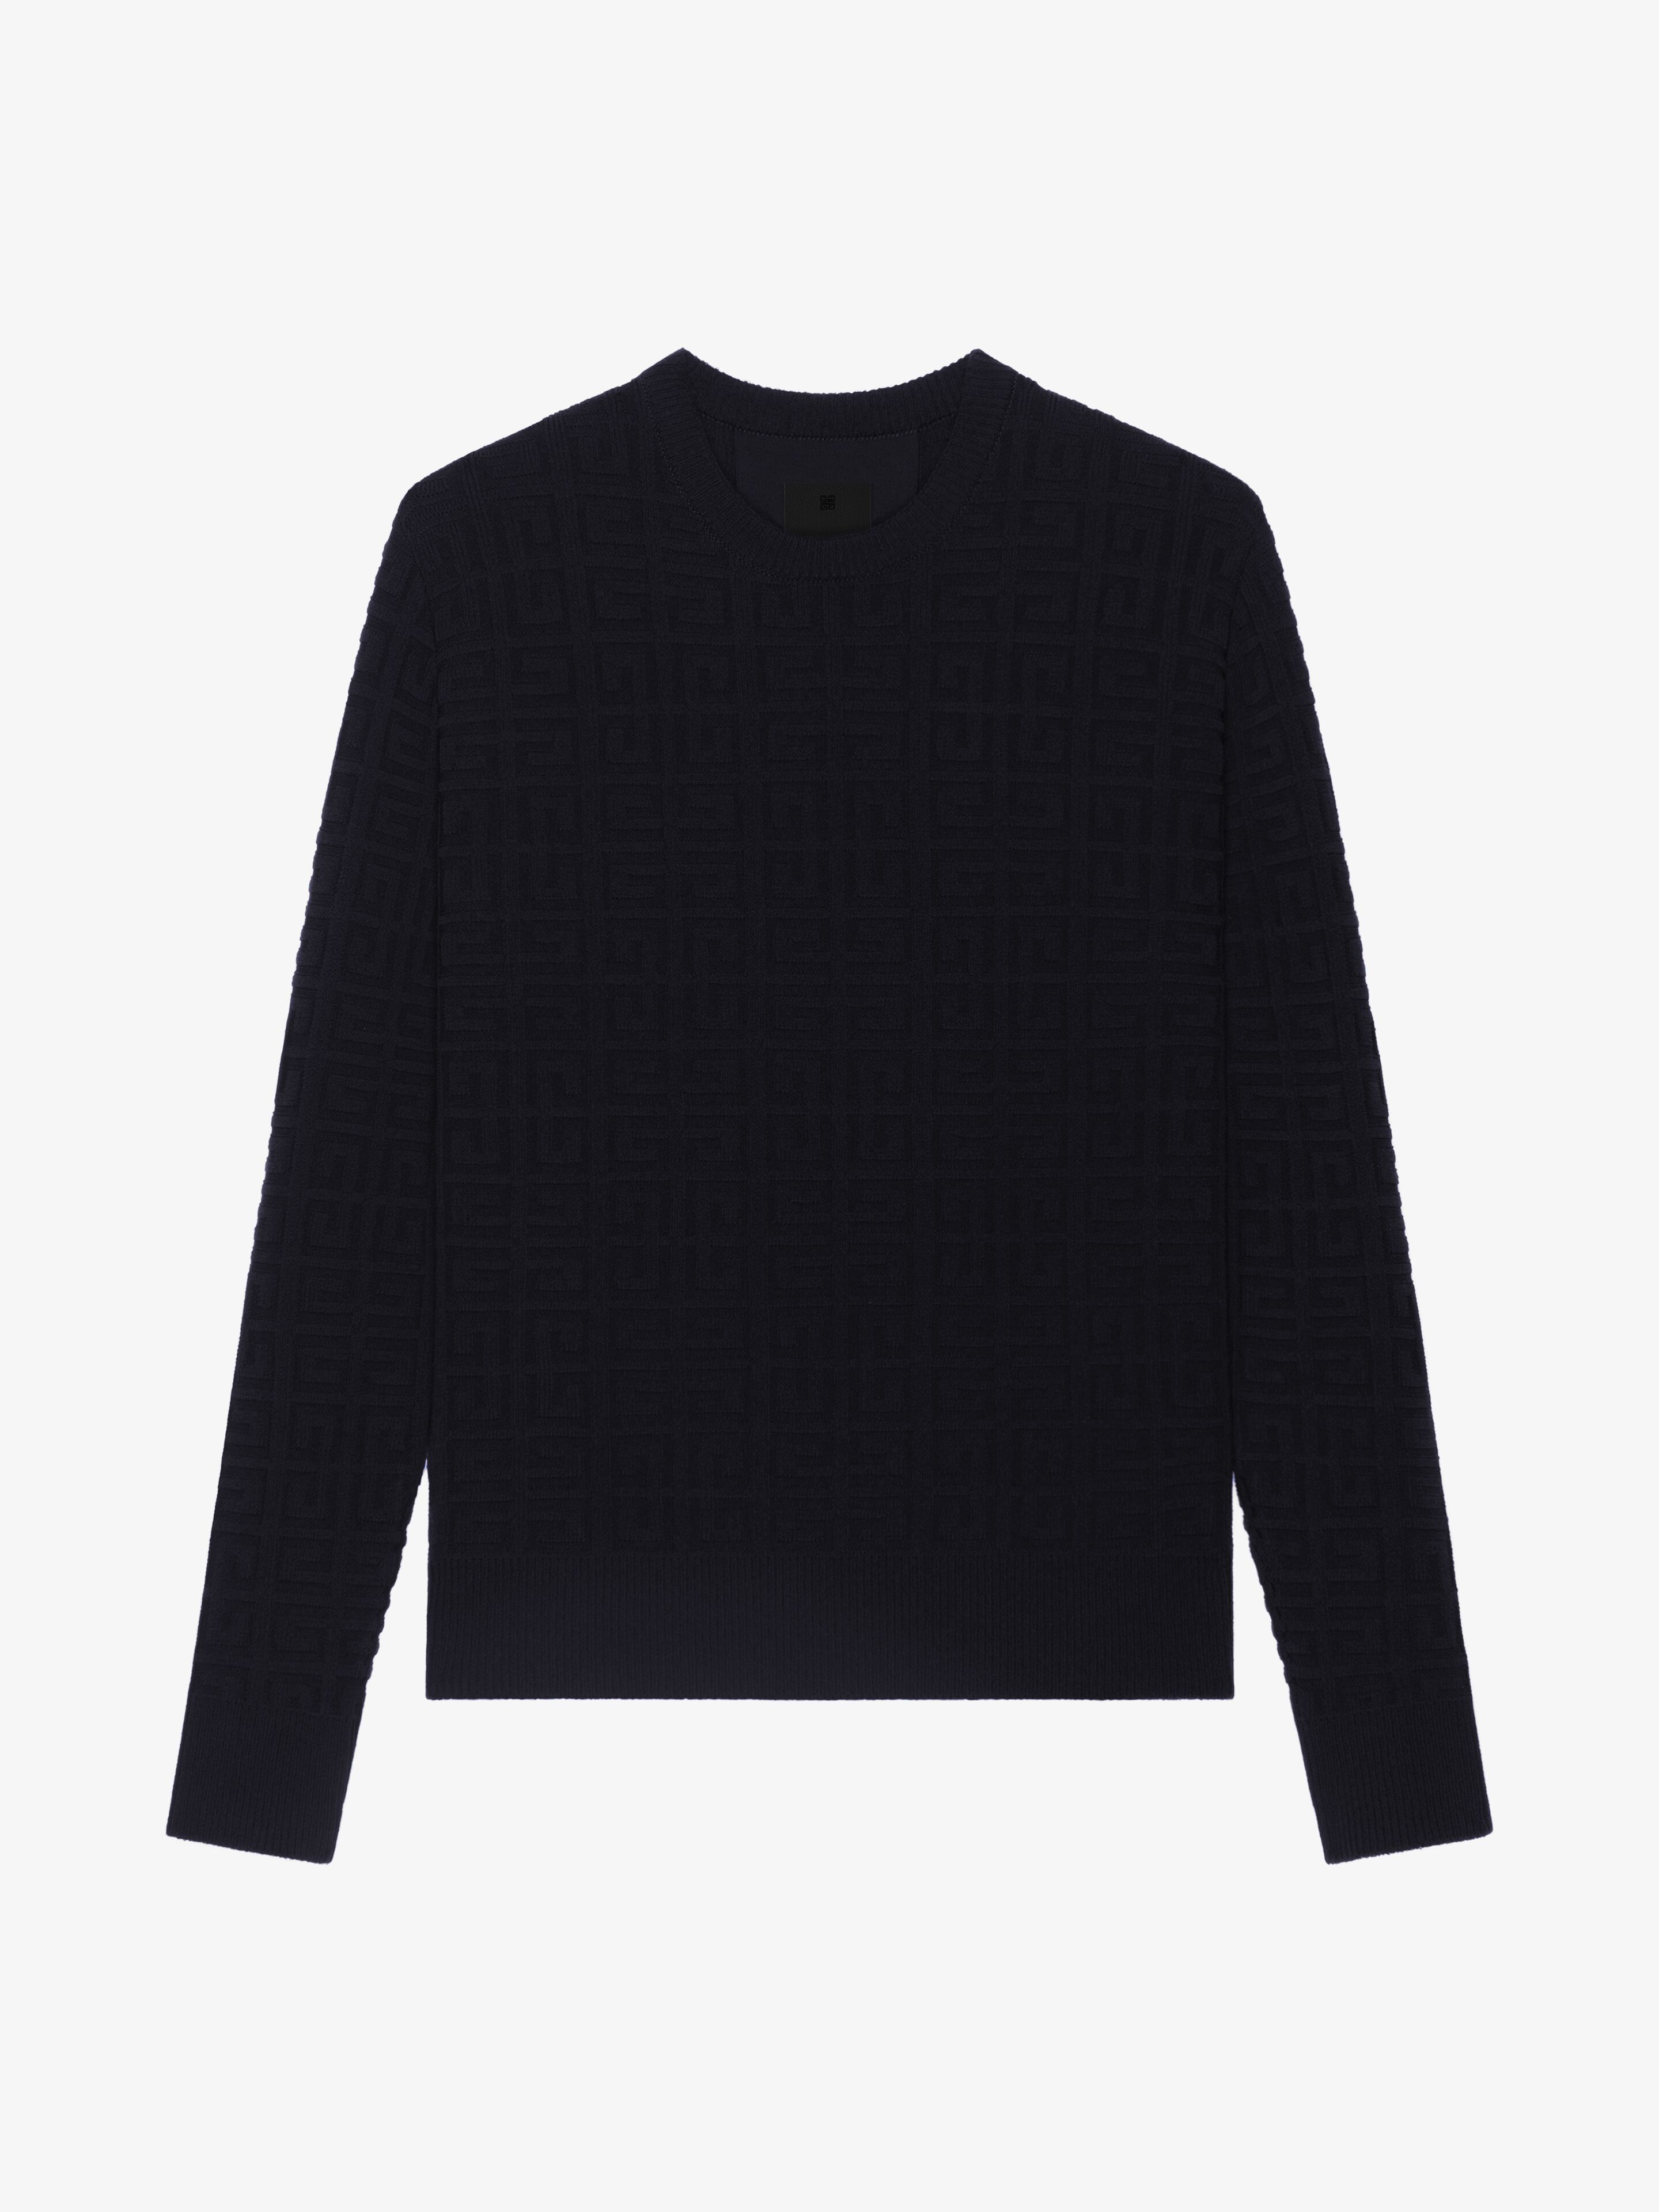 Men's Luxury Knitwear, Designer Sweaters & Cardigans